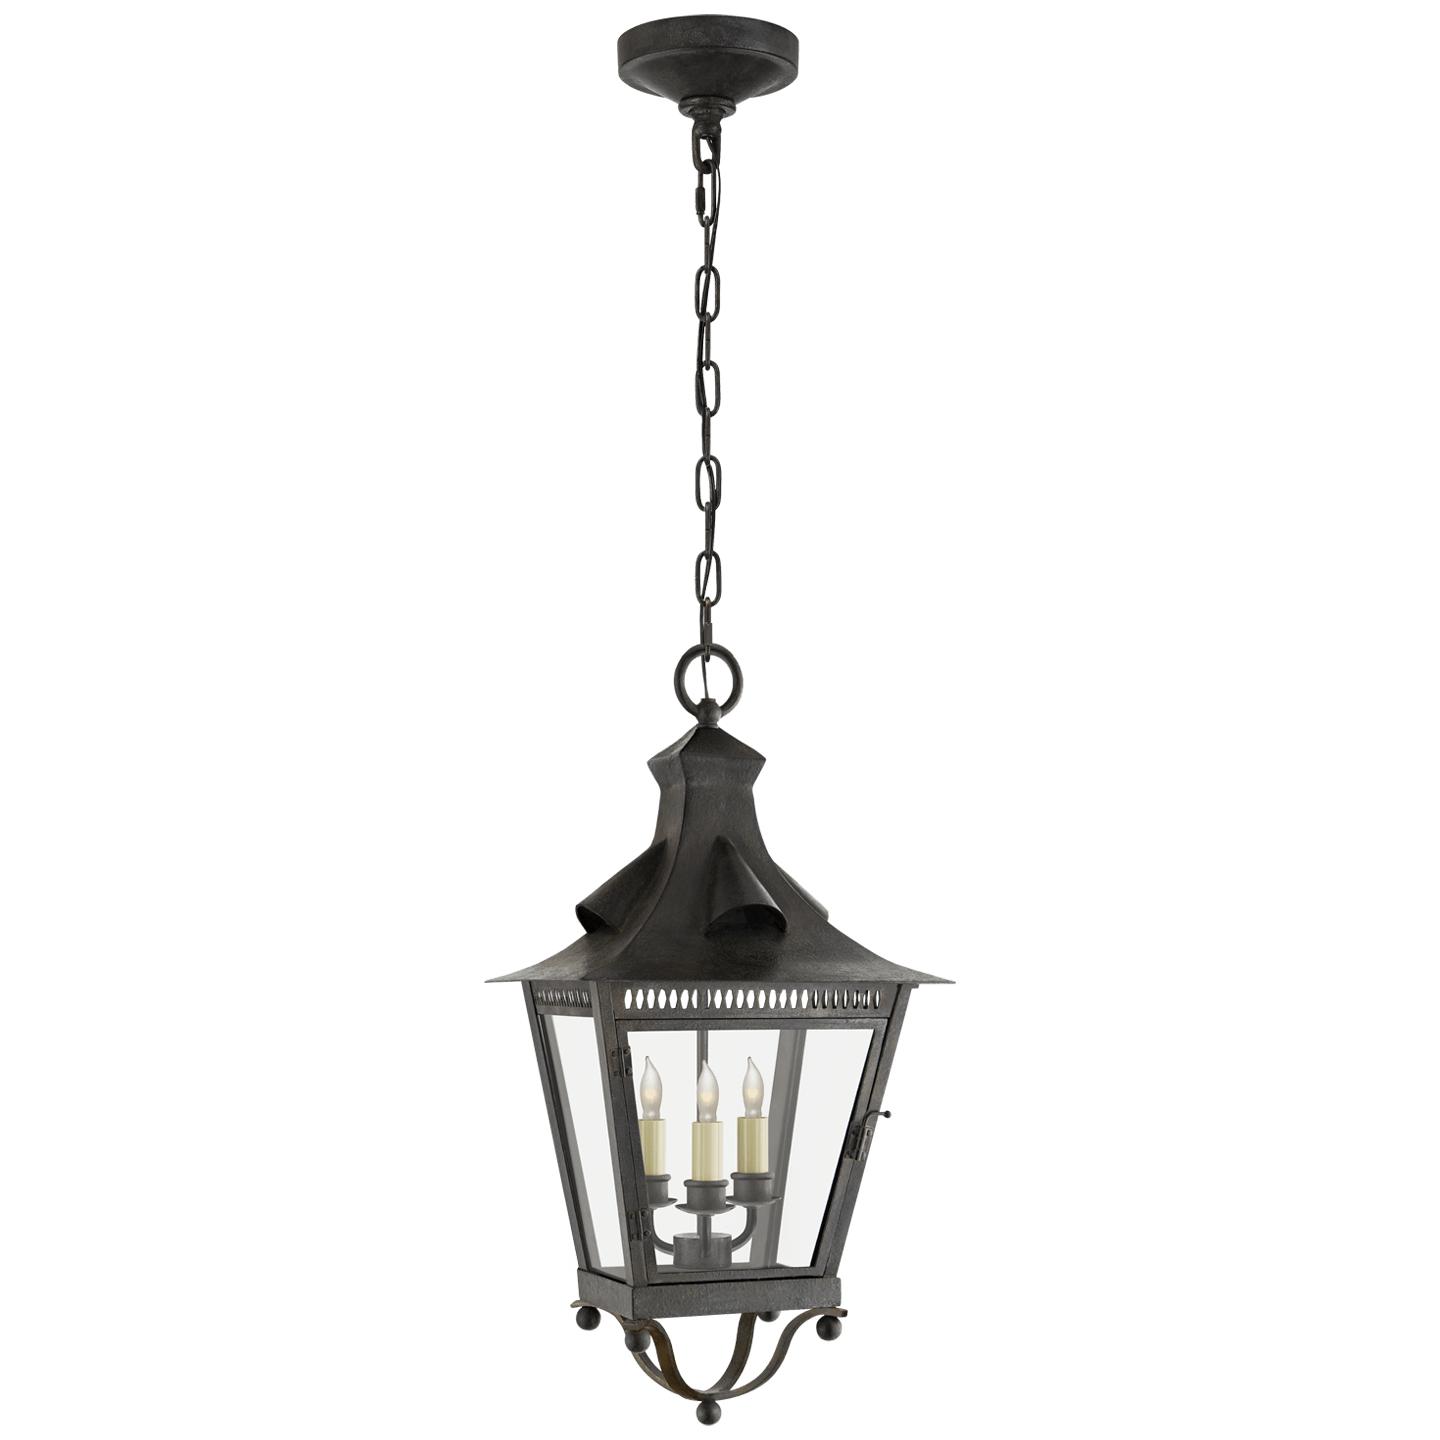 Купить Подвесной светильник Orleans Medium Hanging Lantern в интернет-магазине roooms.ru